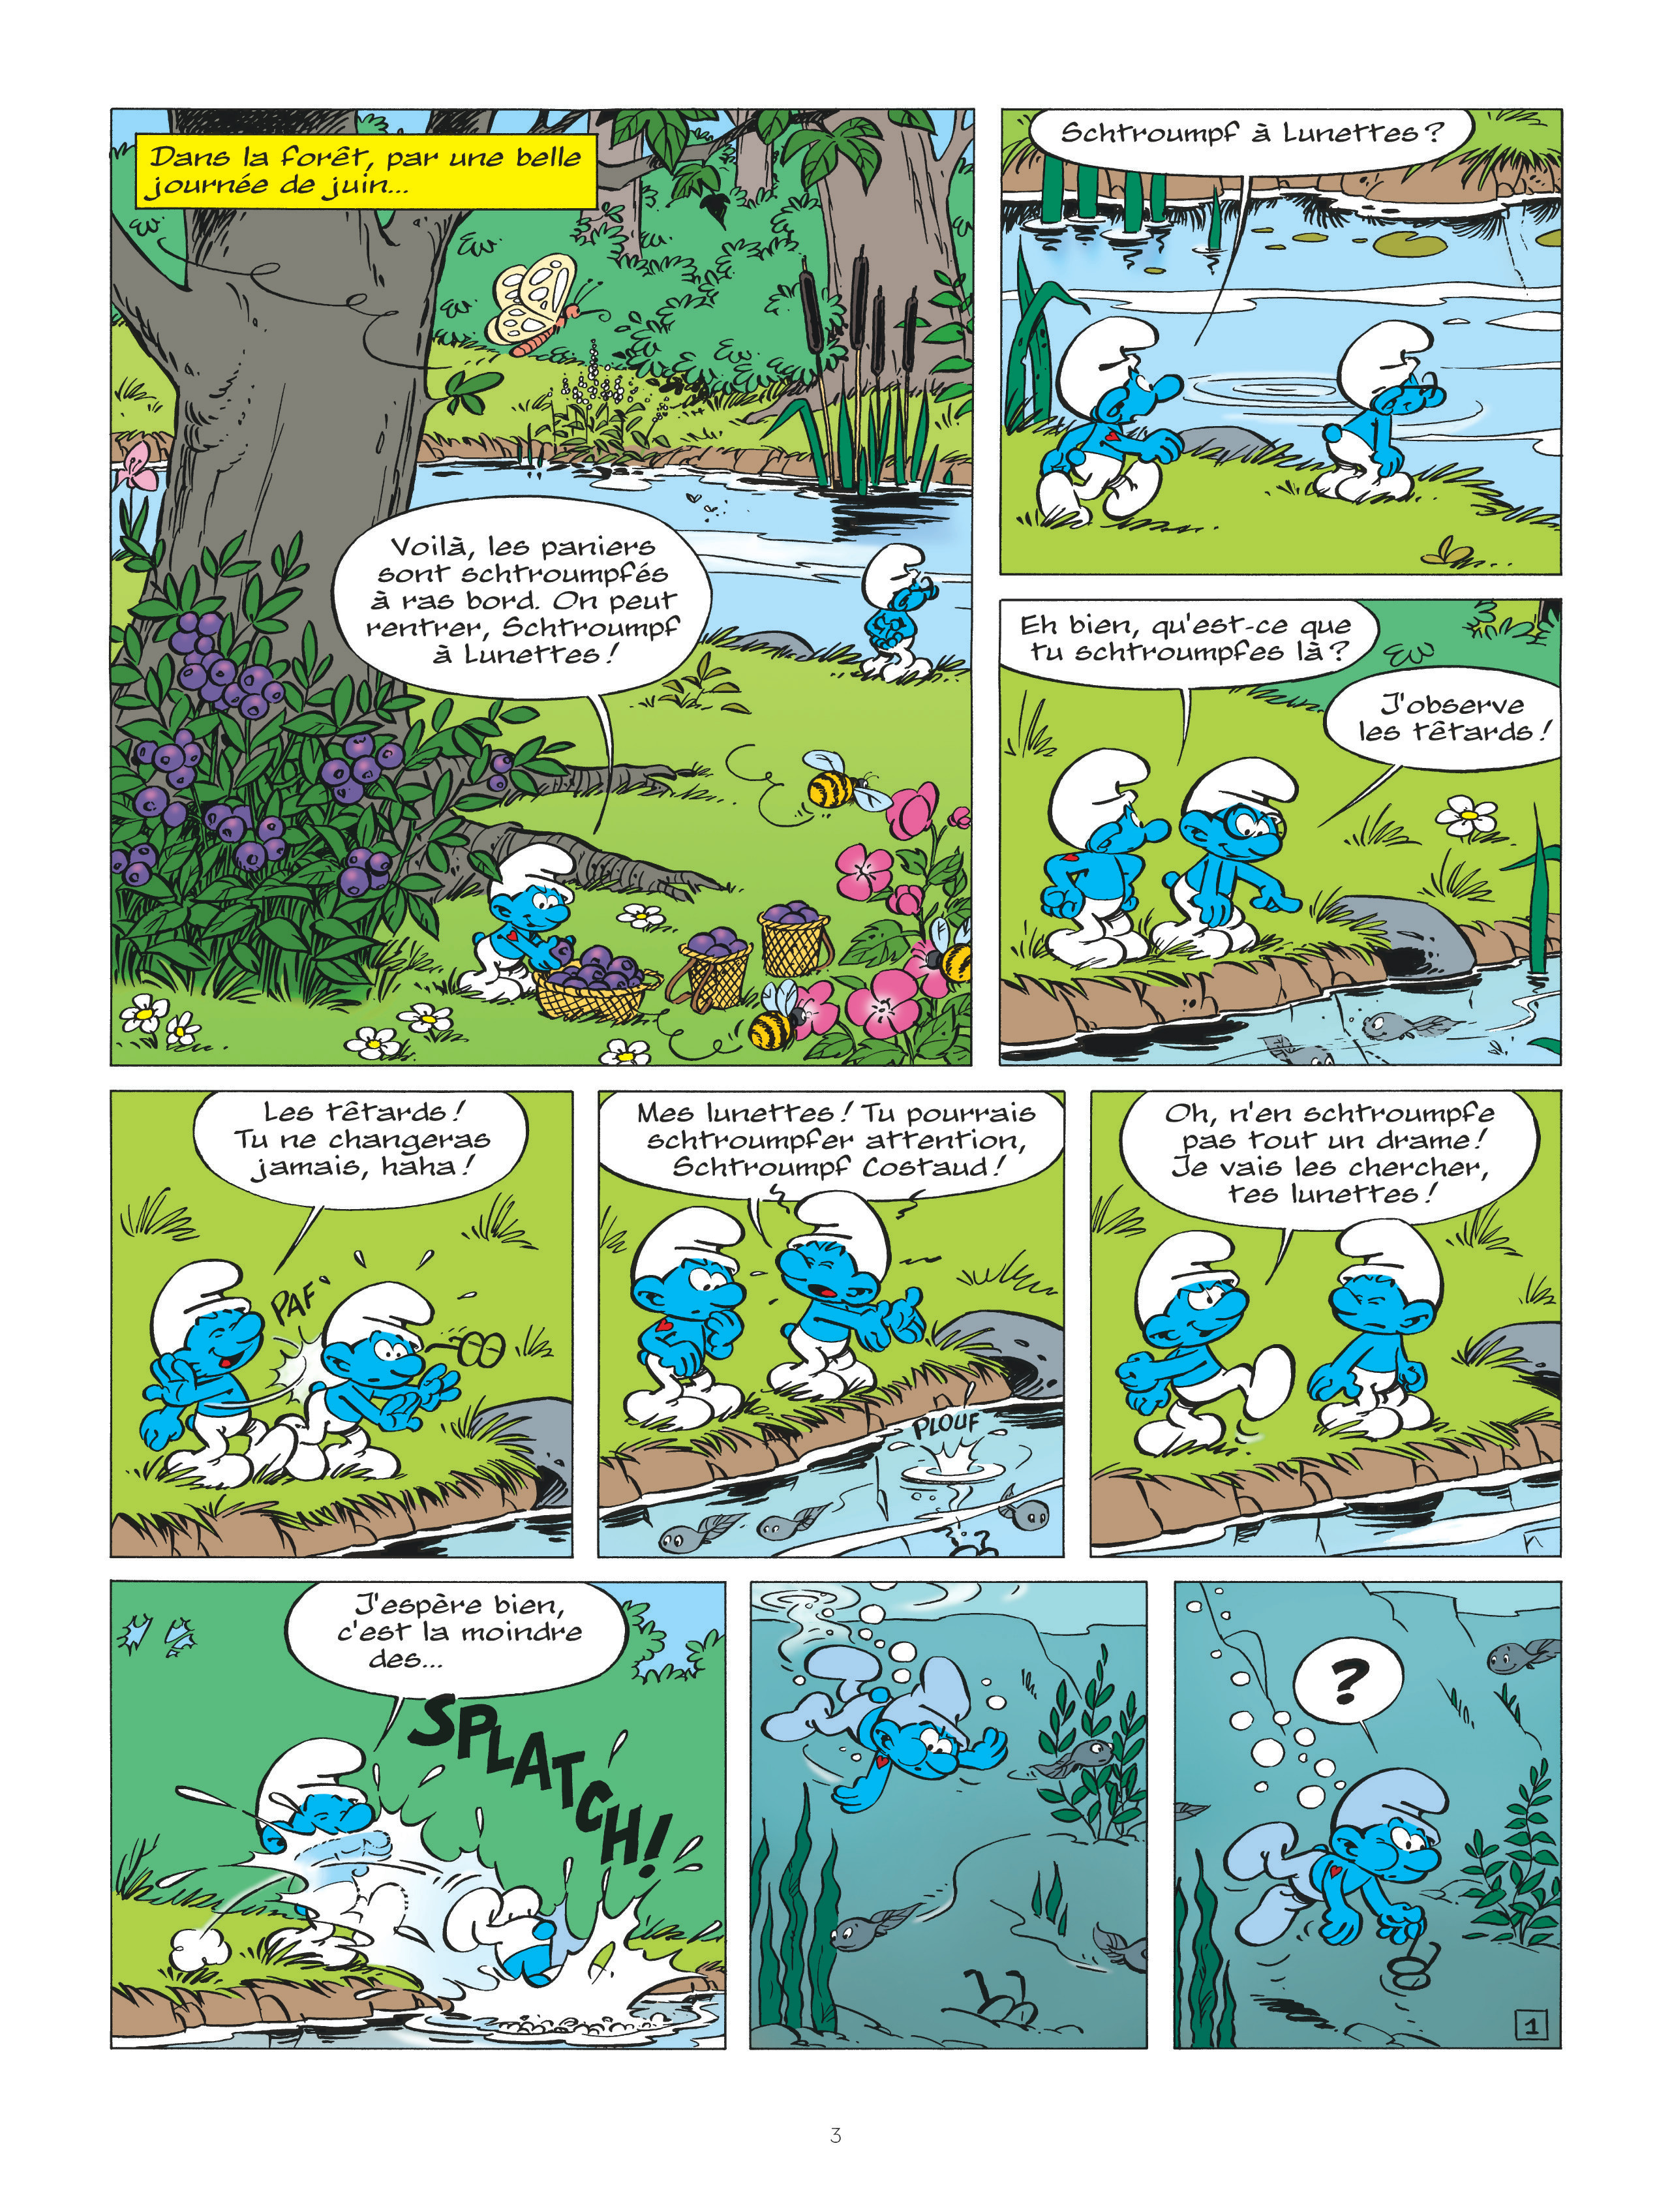 Les schtroumpfs#34_Page 3